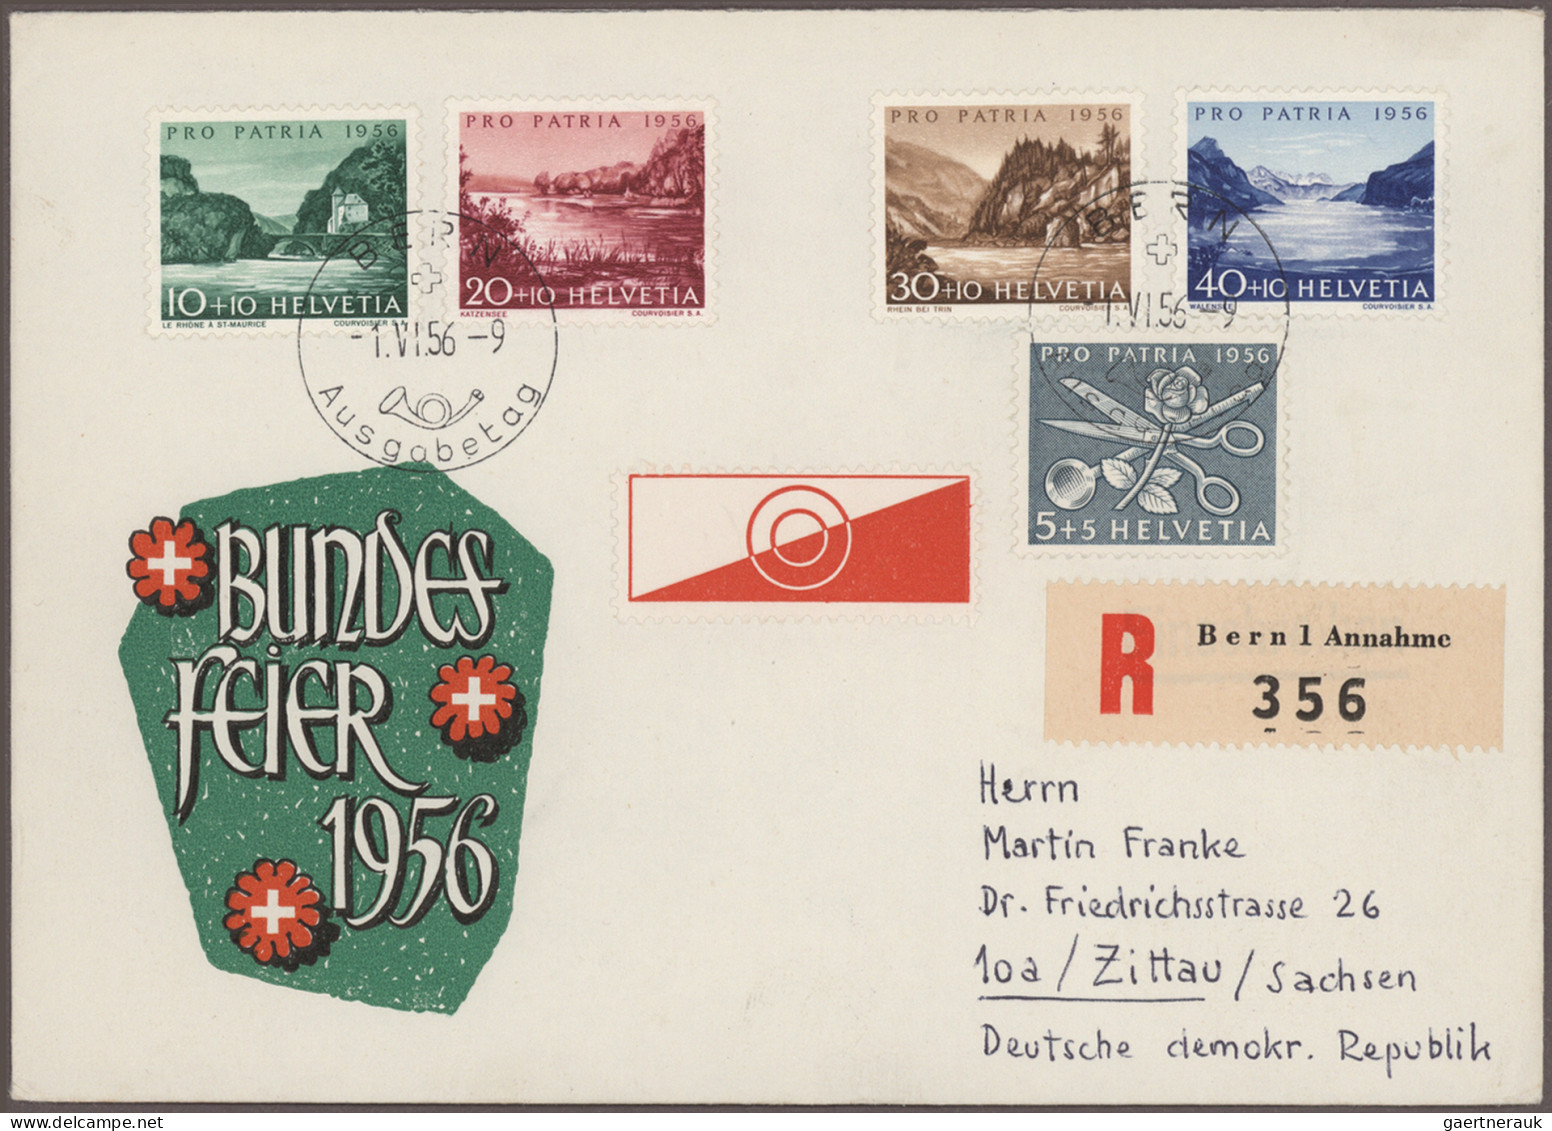 Schweiz: 1862-2000 ca.: Teilsammlungen und Dubletten in 6 Alben und Steckbüchern